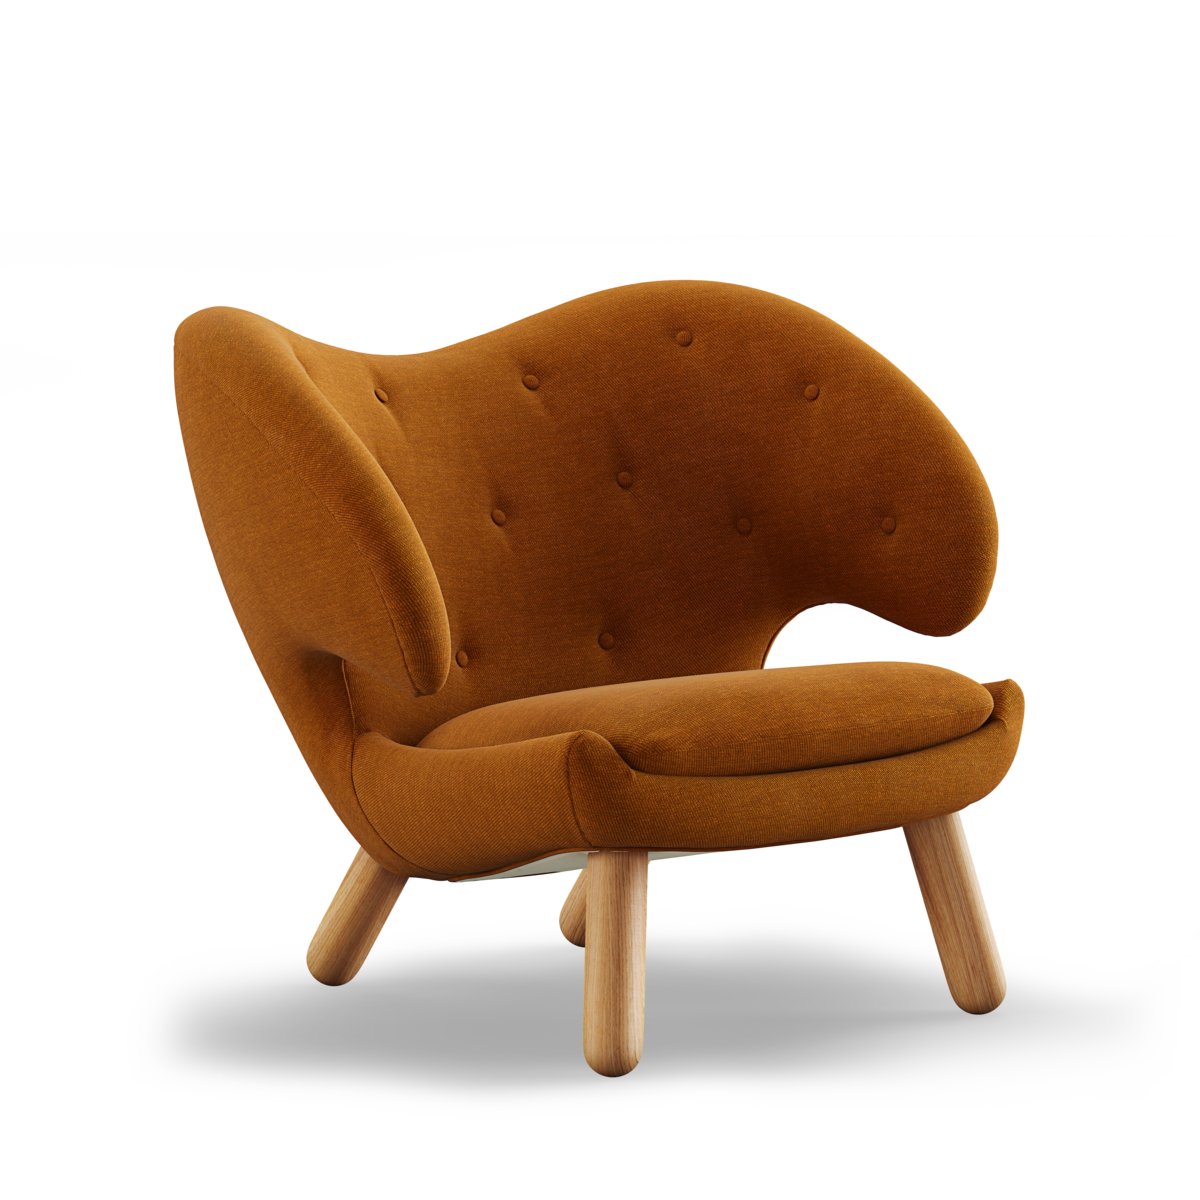 Finn Juhl Pelican chair / Watercolour Golden Syrup